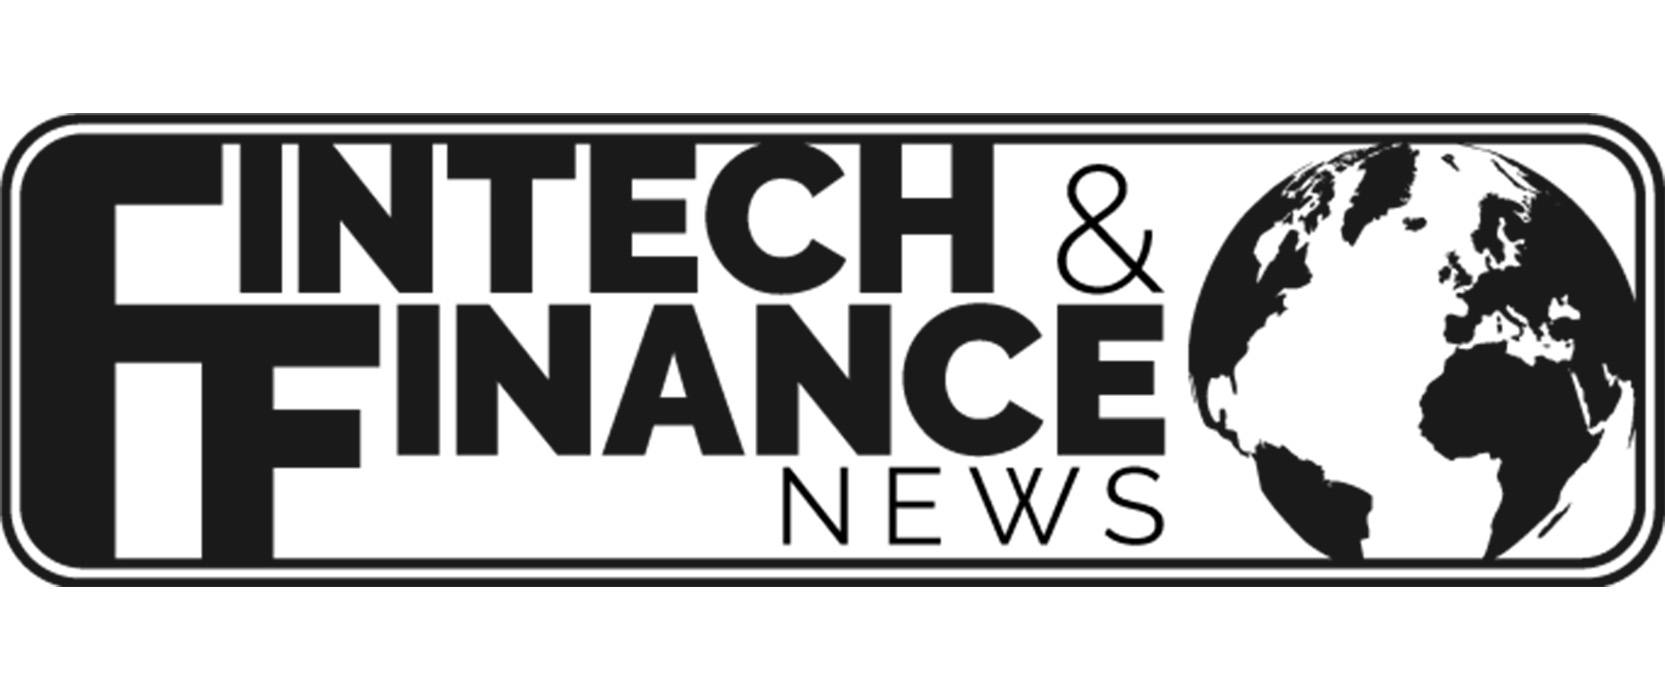 Fintech & Finance News logo